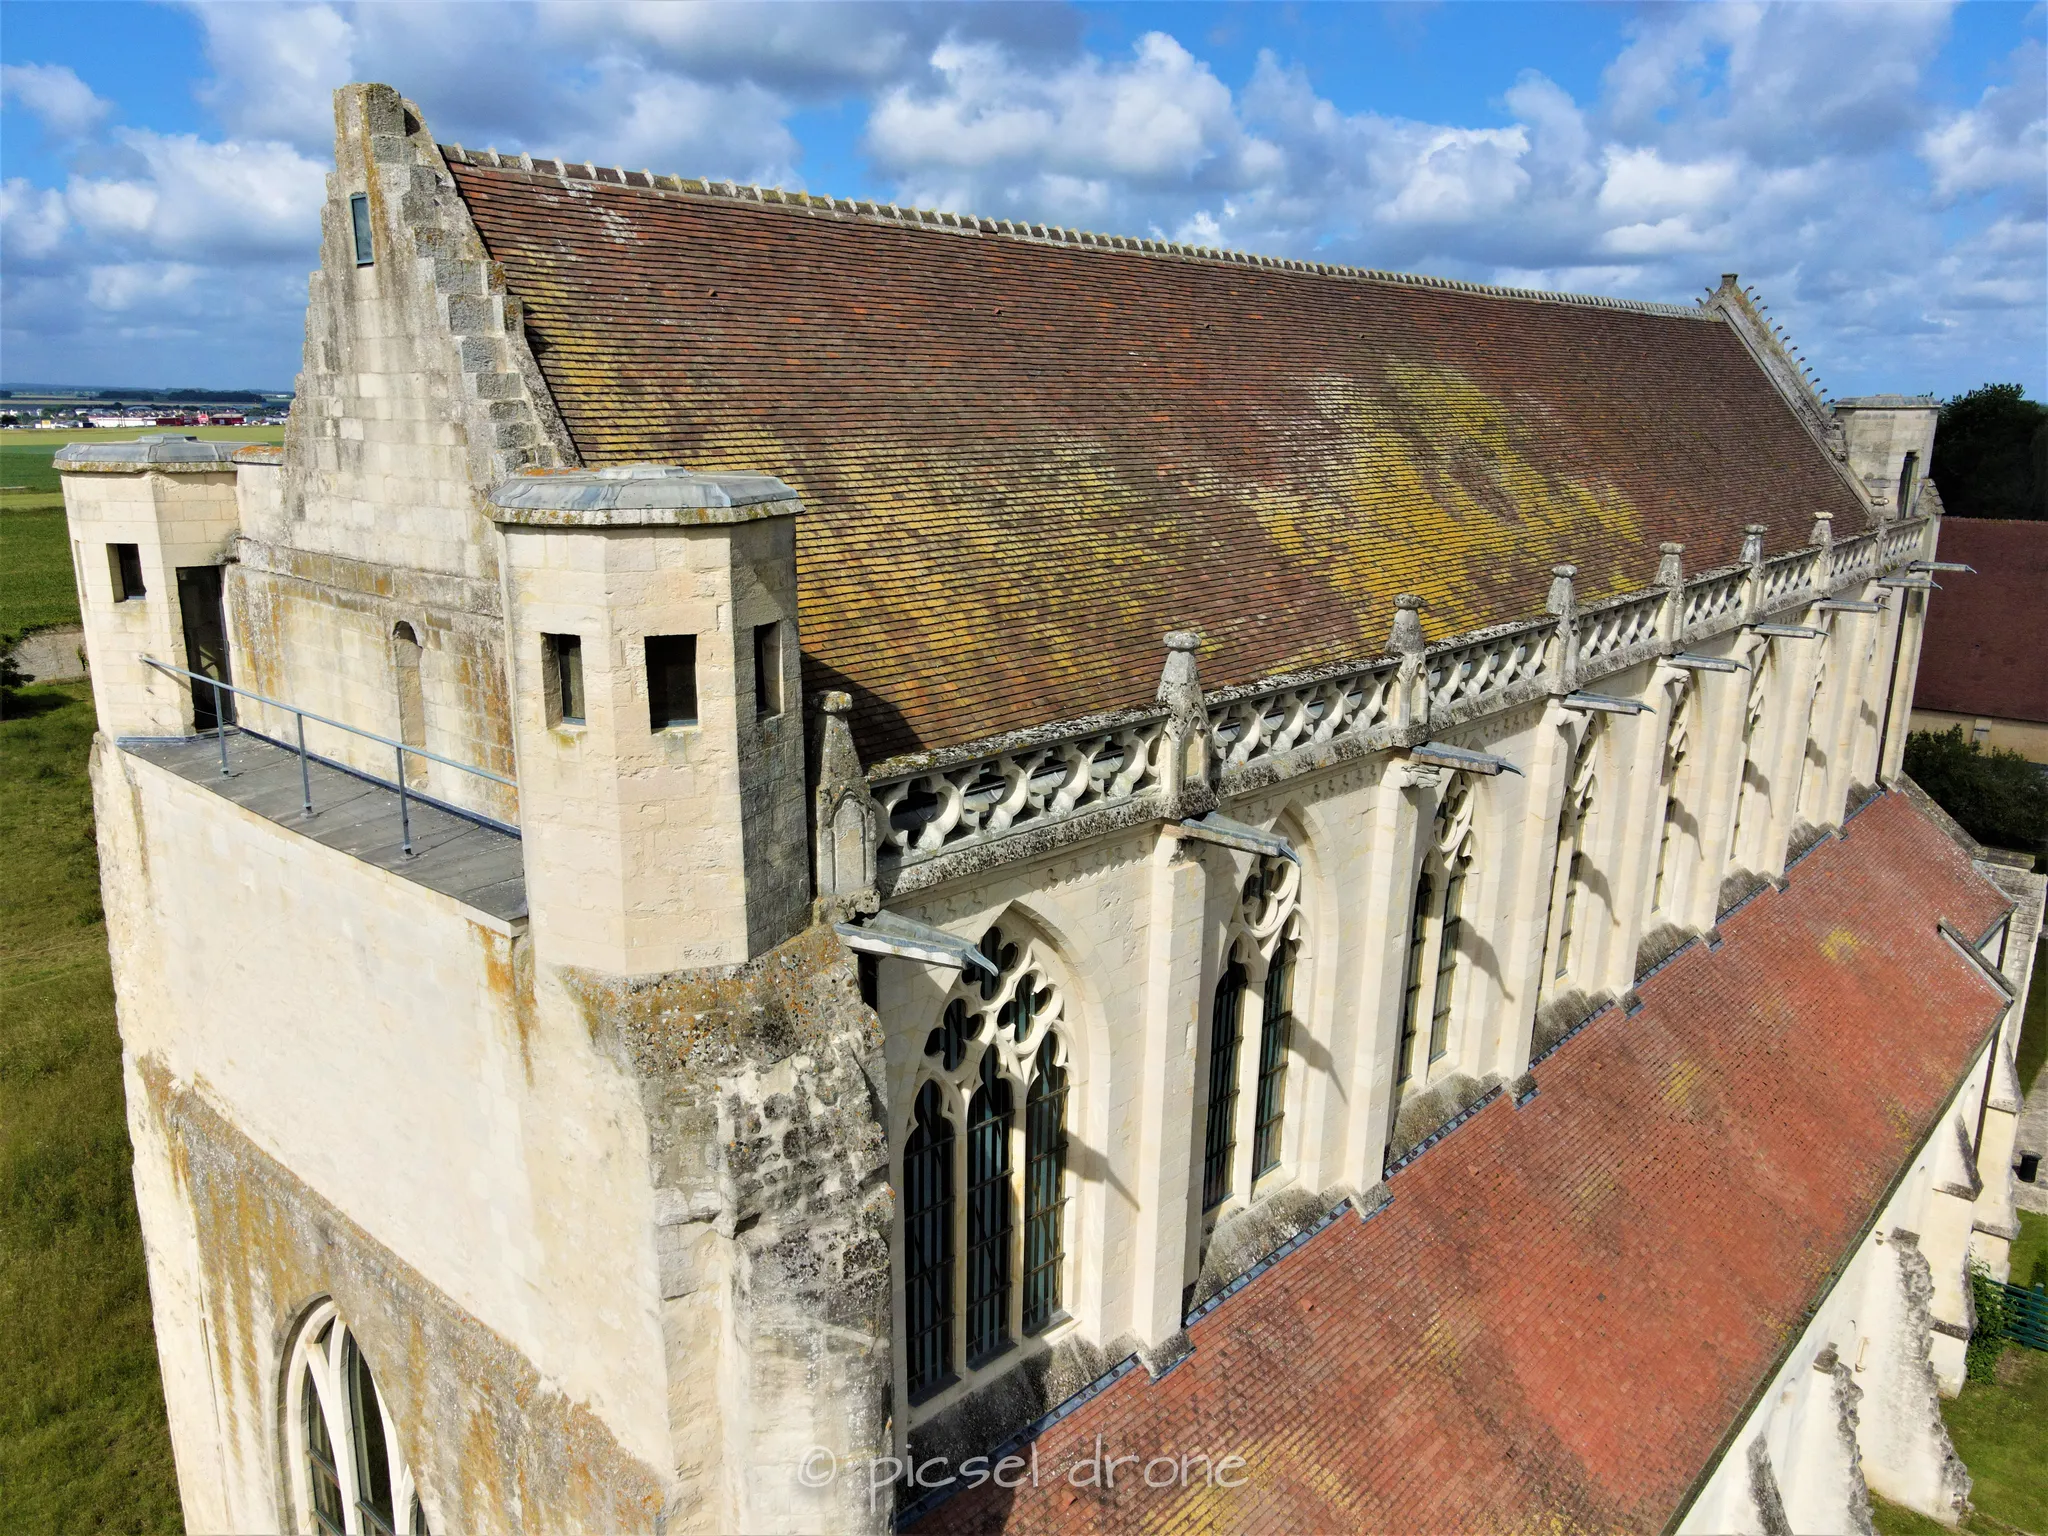 Prise de vue aérienne, photo aérienne de l'Abbaye d'Ardenne, IMEC, Saint-Germain-la-Blanche-Herbe télépilote drone, pilote drone, PICSEL DRONE, CAEN